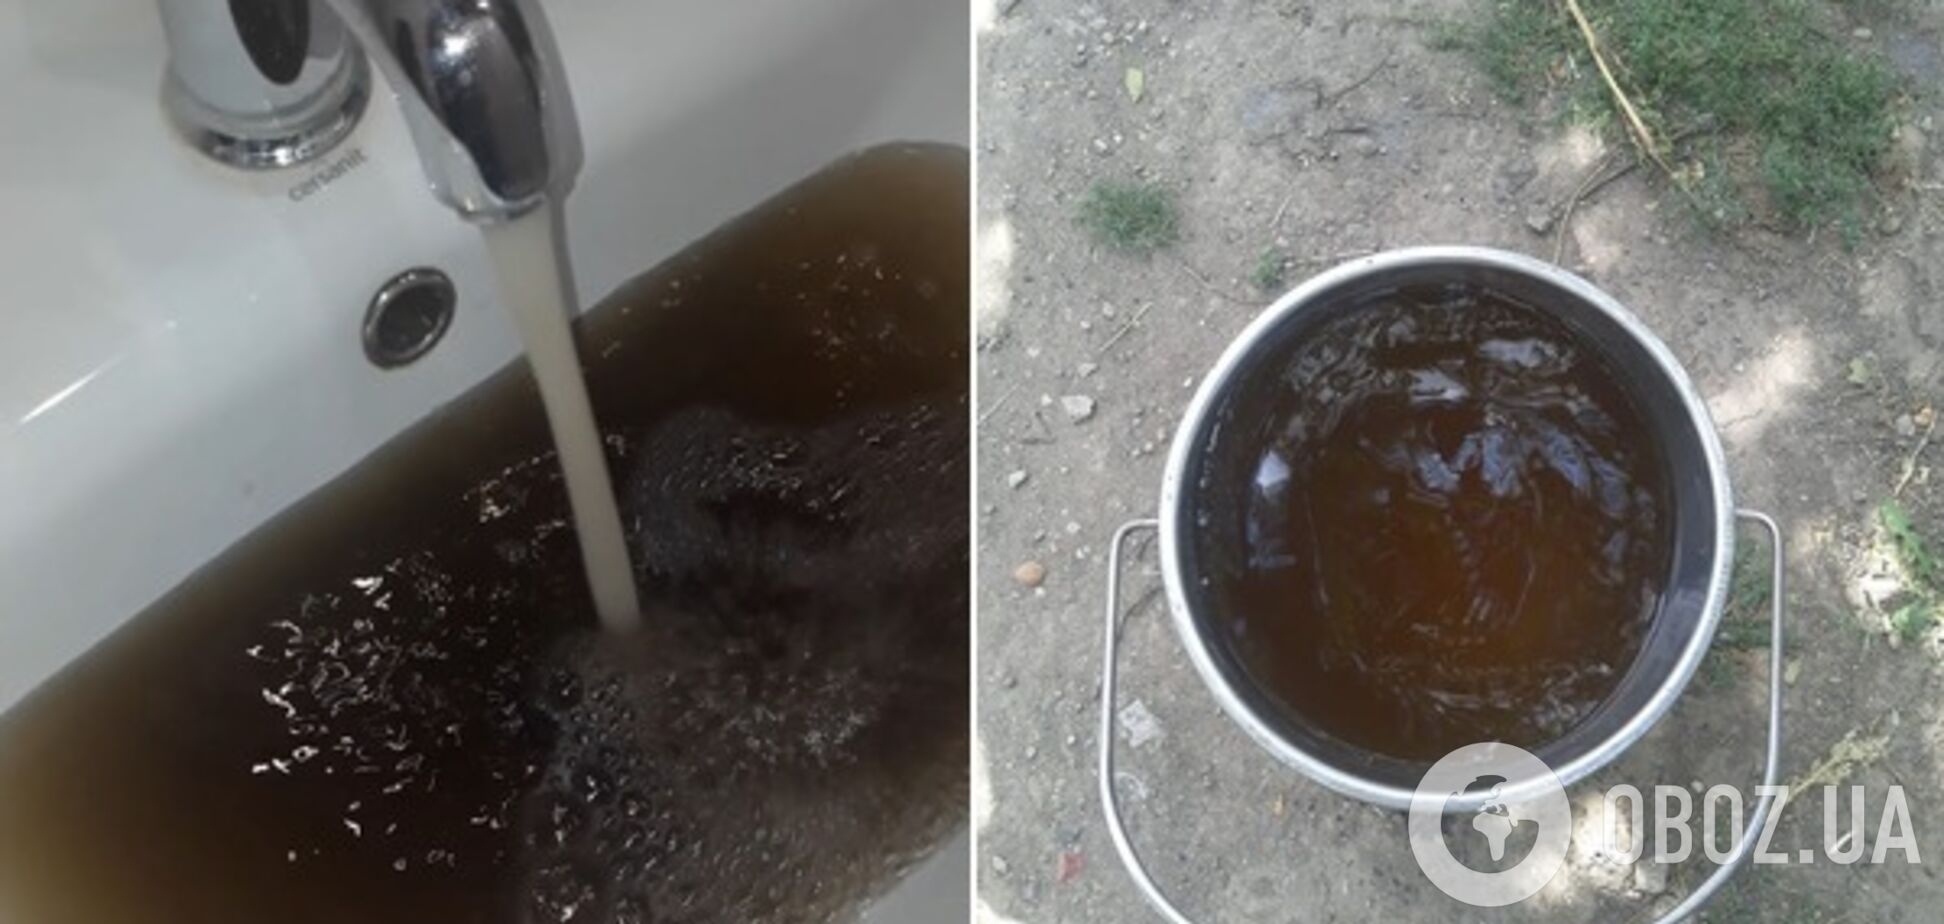 'Прямо Coca-cola!' Мешканців Дніпропетровщини налякала вода з крана